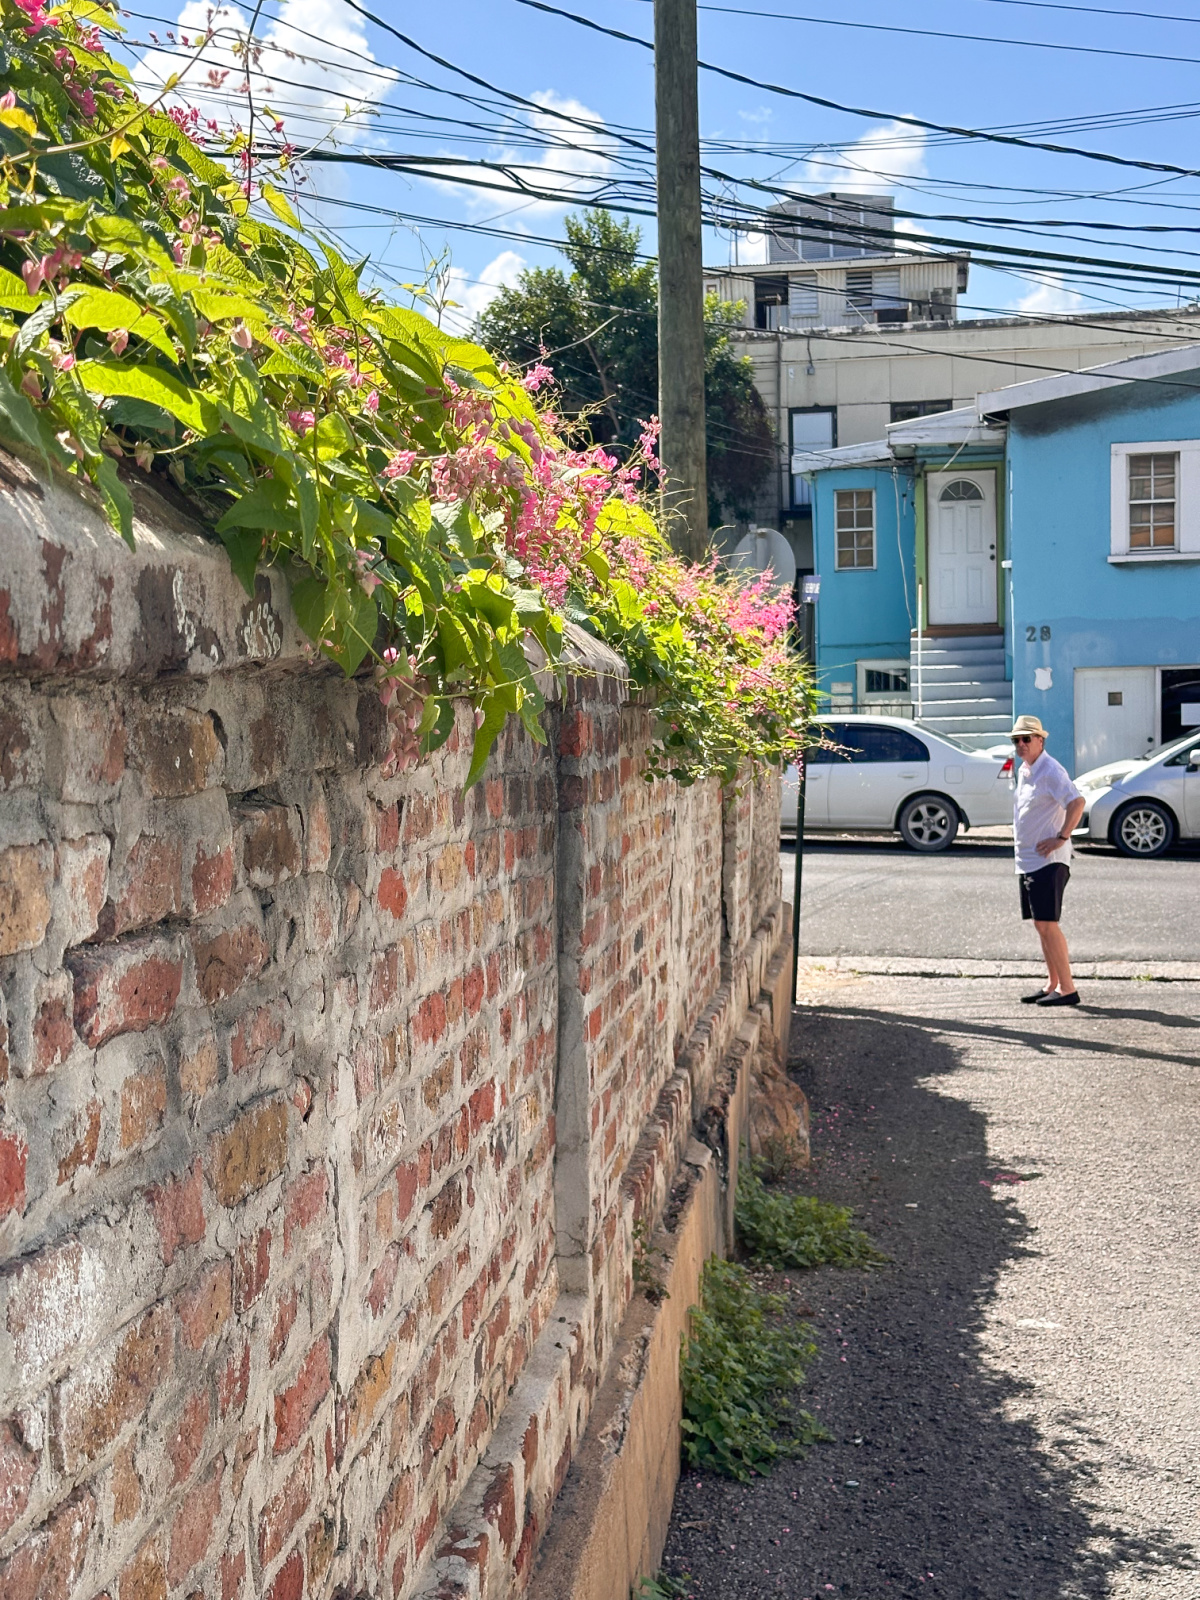 Man standing at end of path next to brick wall at St. John's Church, Antigua.